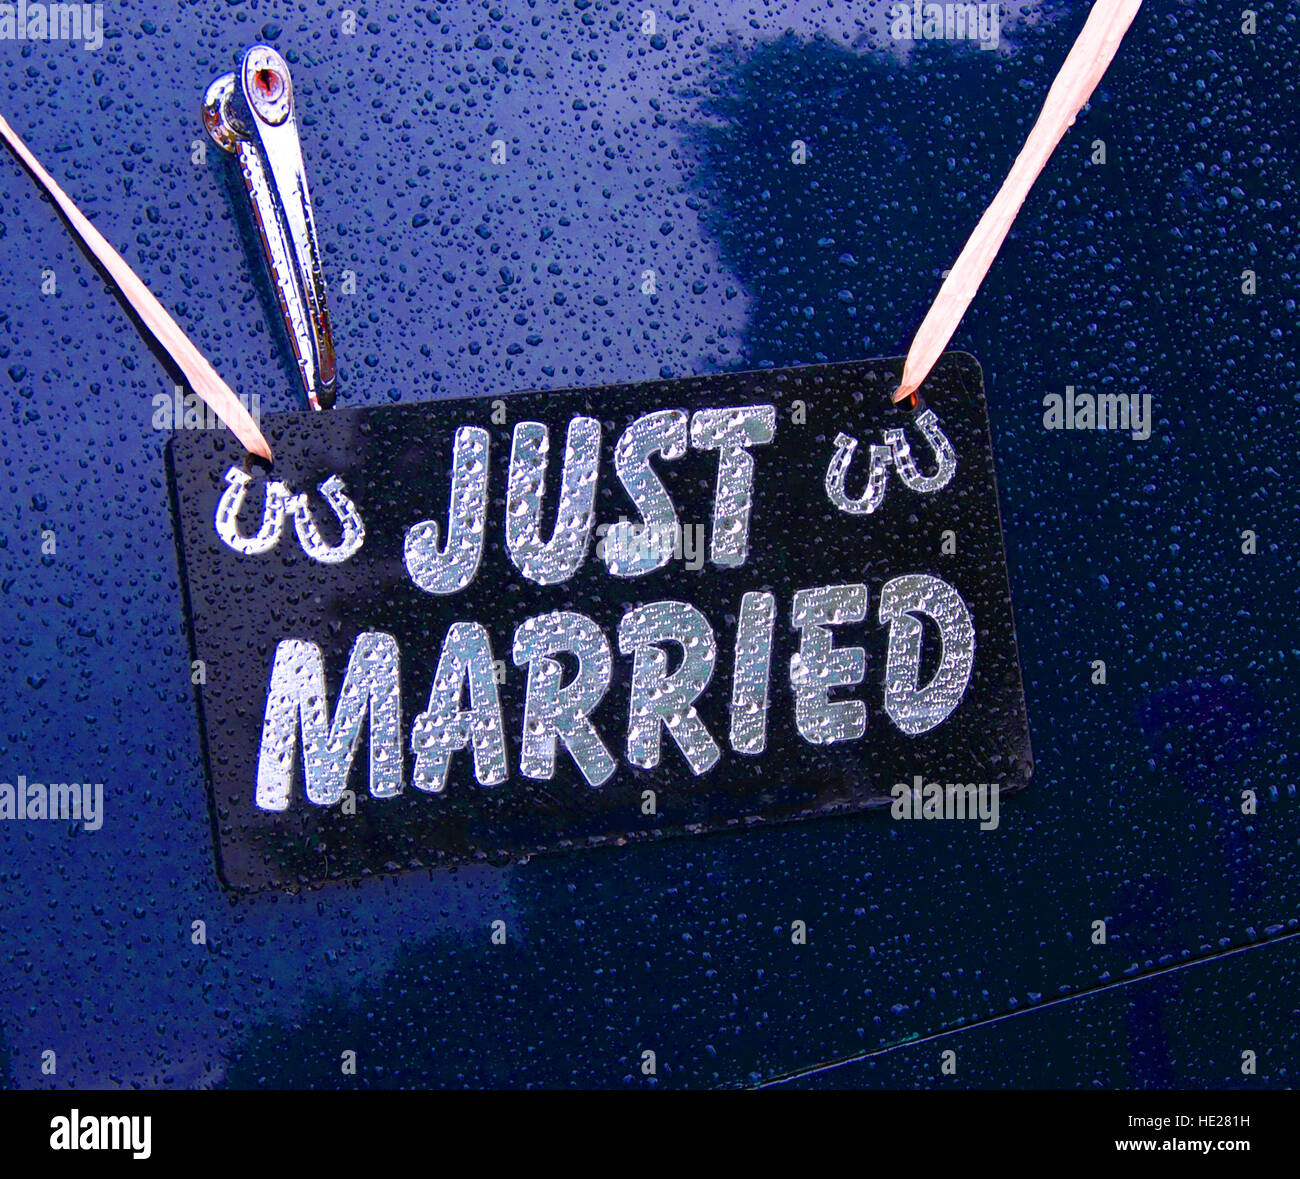 Just Married Auto isoliert auf weißem Hintergrund 3D-Rendering  Stockfotografie - Alamy